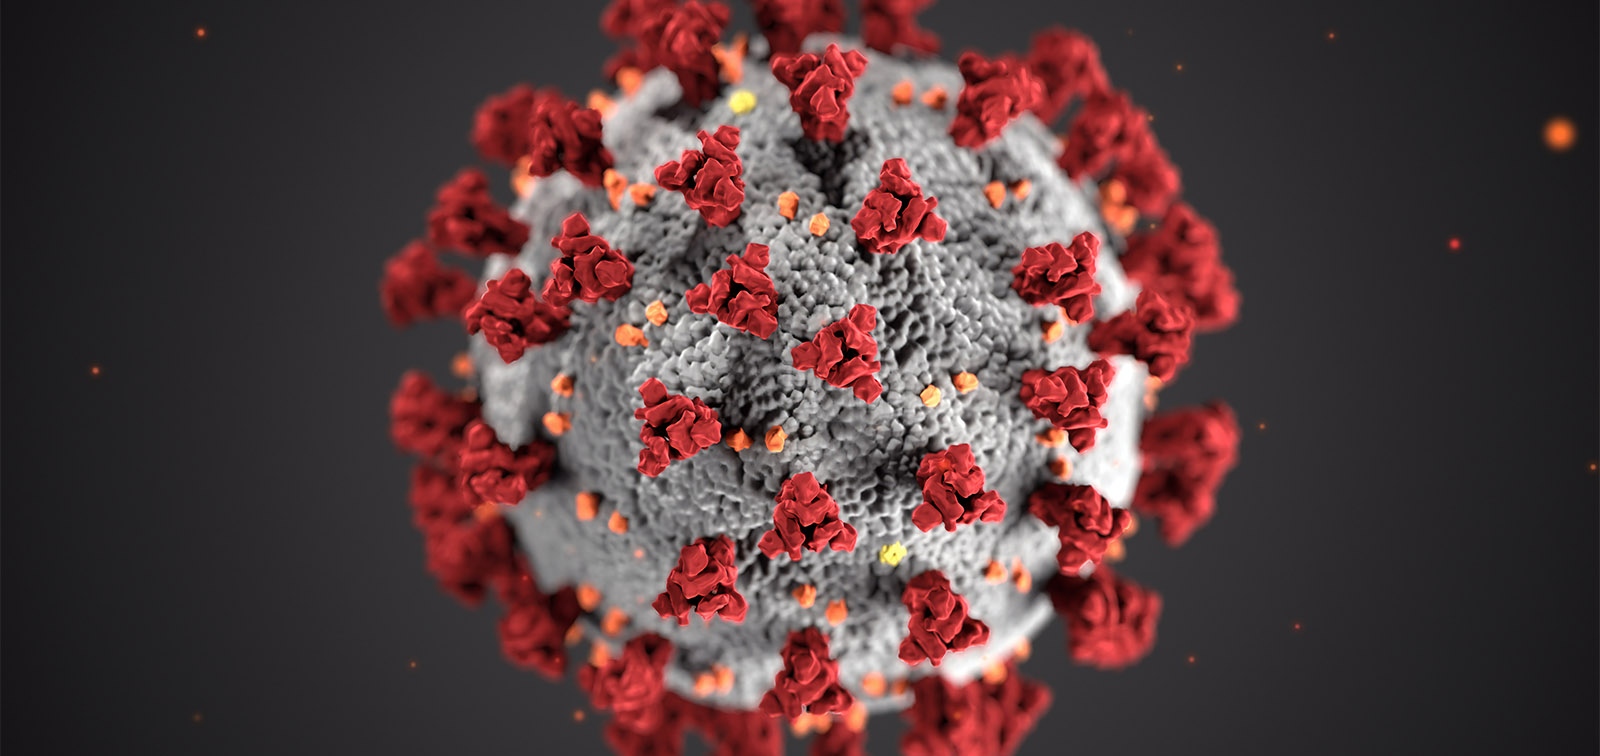 За да спрат увеличаването на коронавирусните инфекции, германските власти предлагат